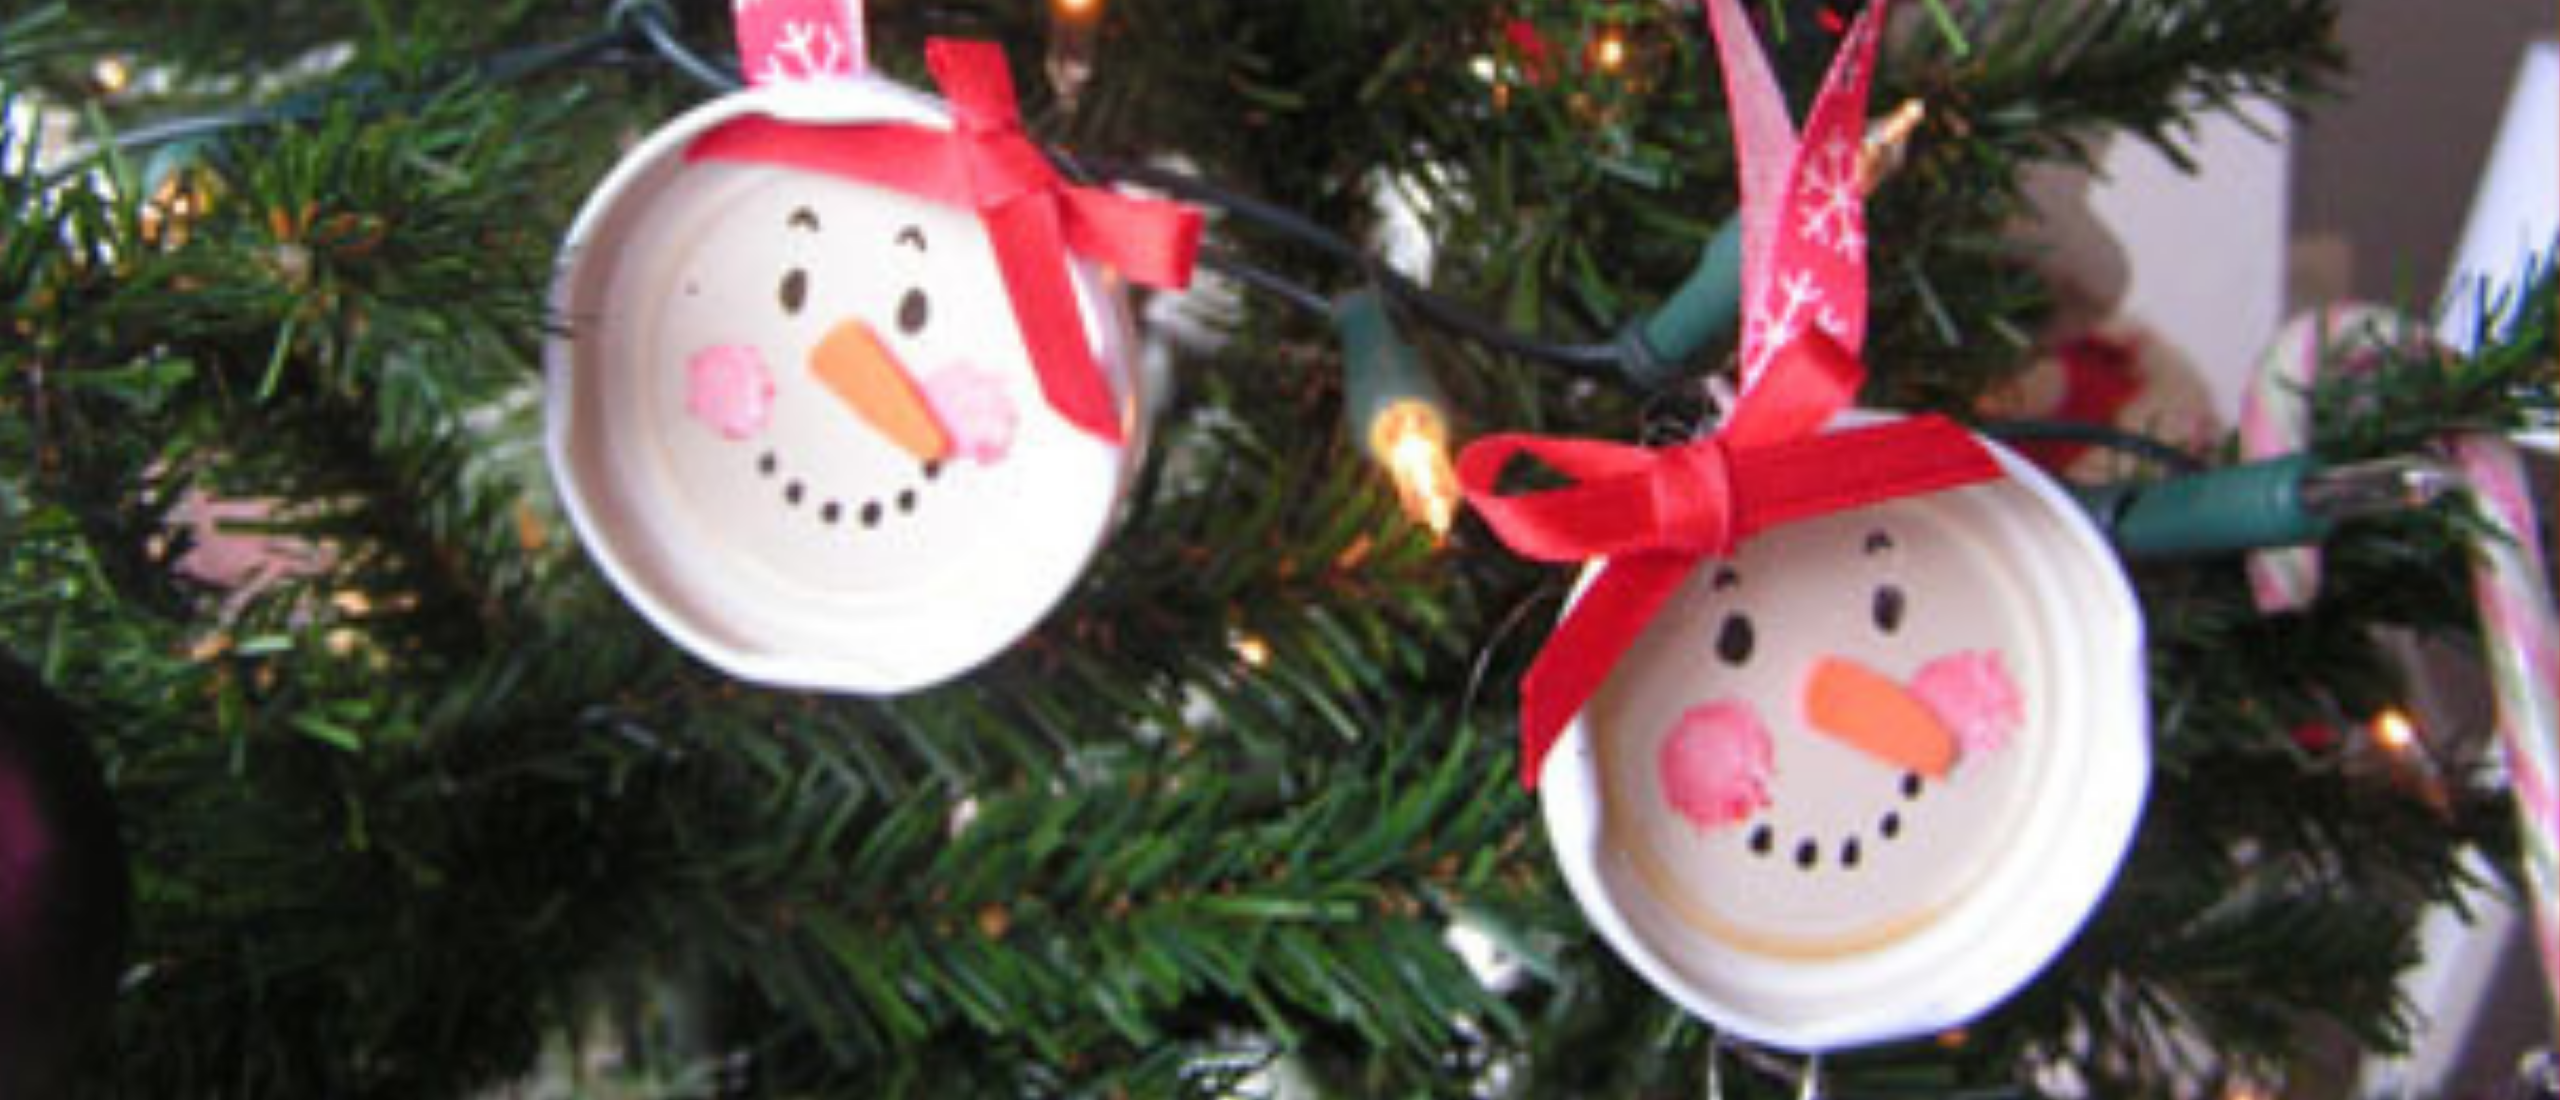 Kerst knutselen: vrolijke hangers voor in de kerstboom